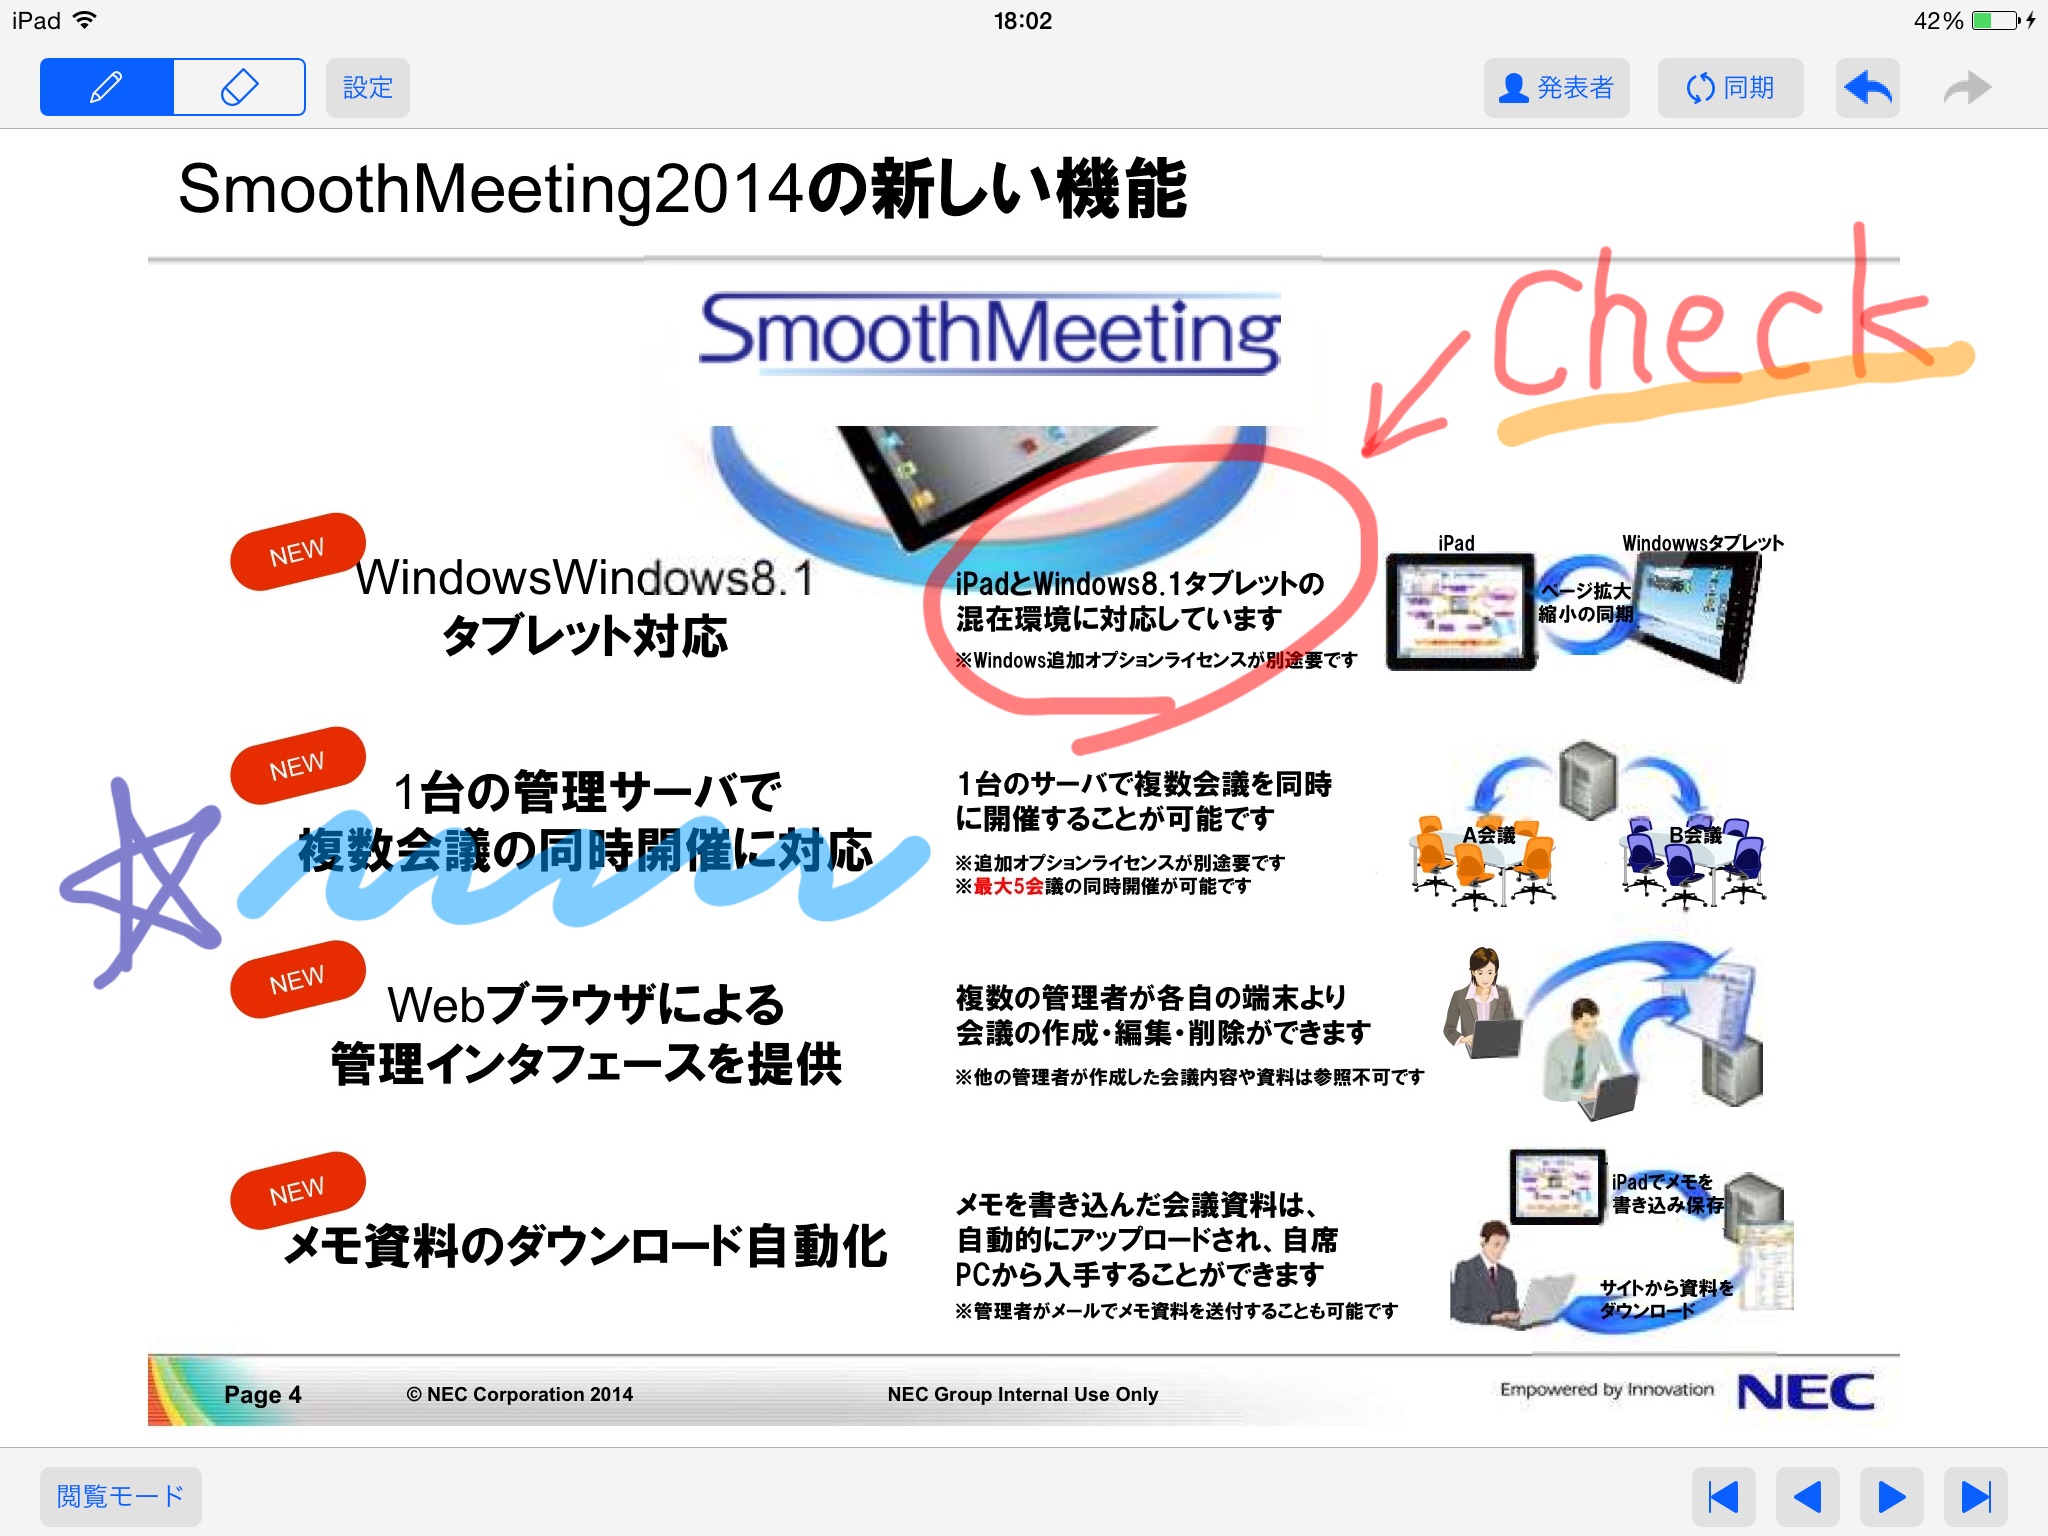 SmoothMeeting 2014 screenshot 2